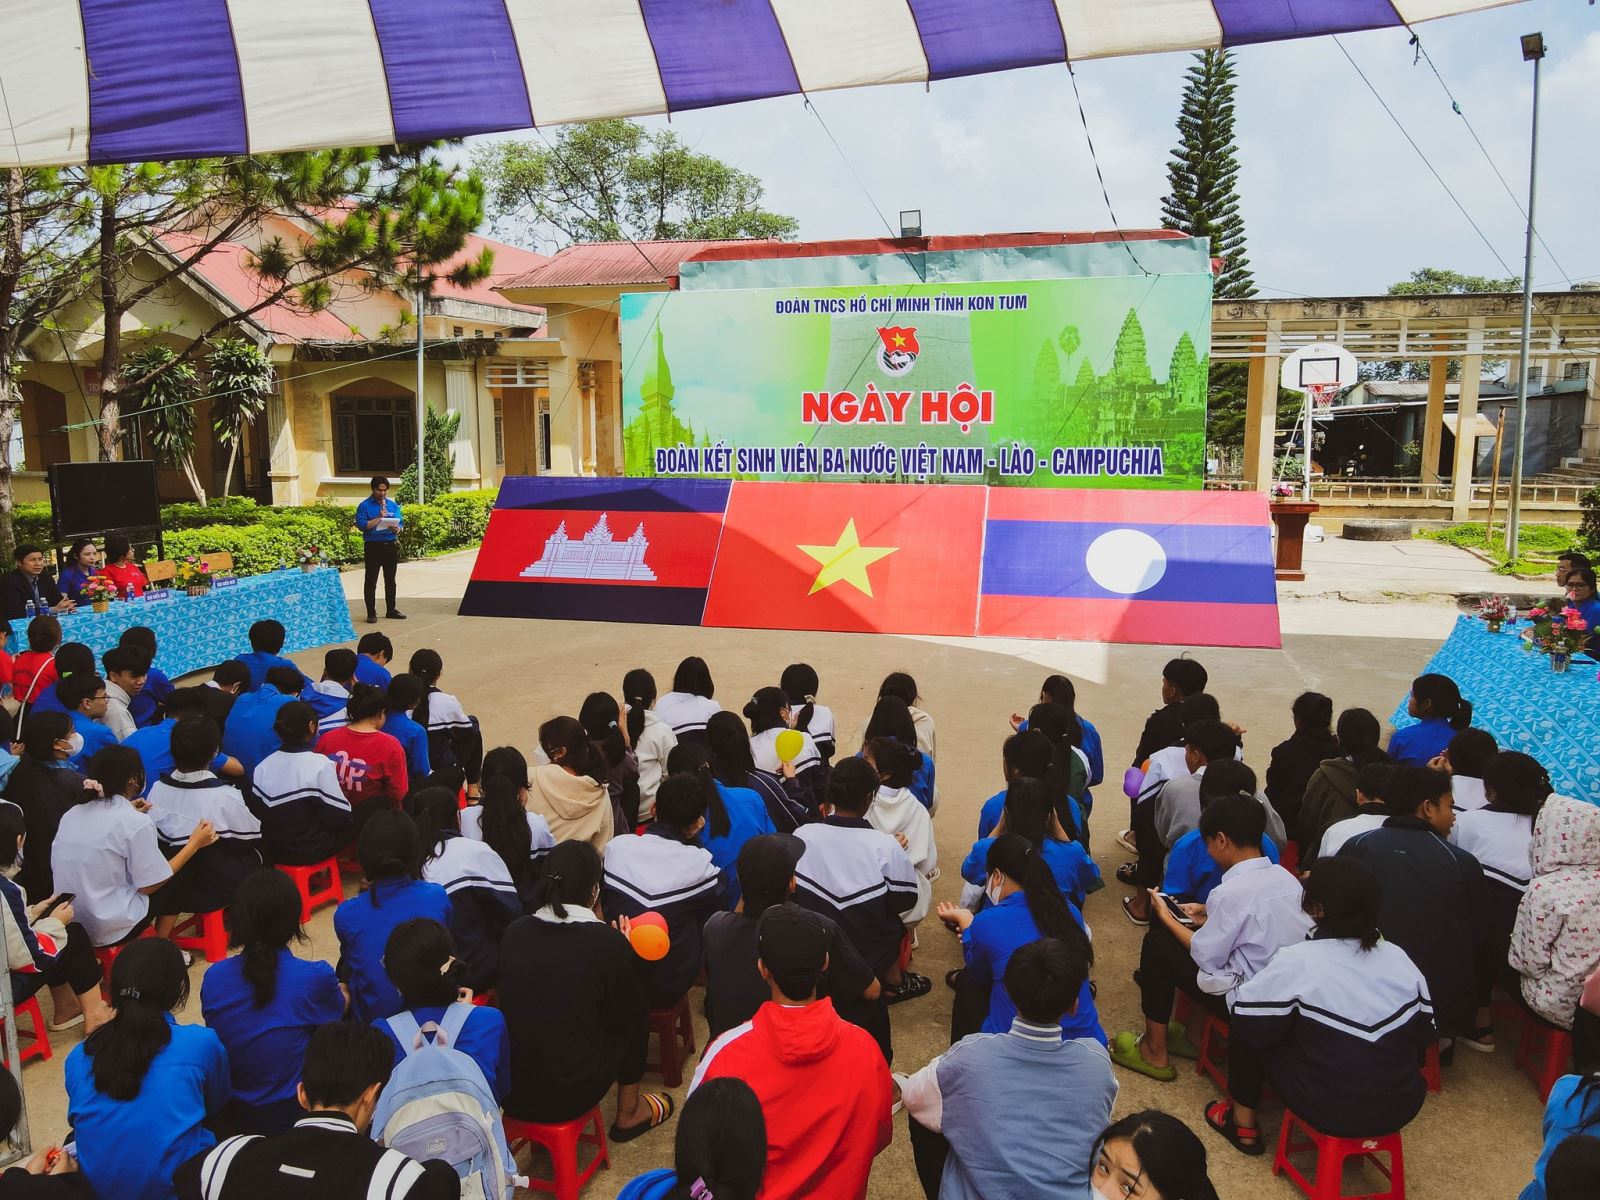 Ngày hội Đoàn kết sinh viên 3 nước Việt Nam - Lào - Campuchia